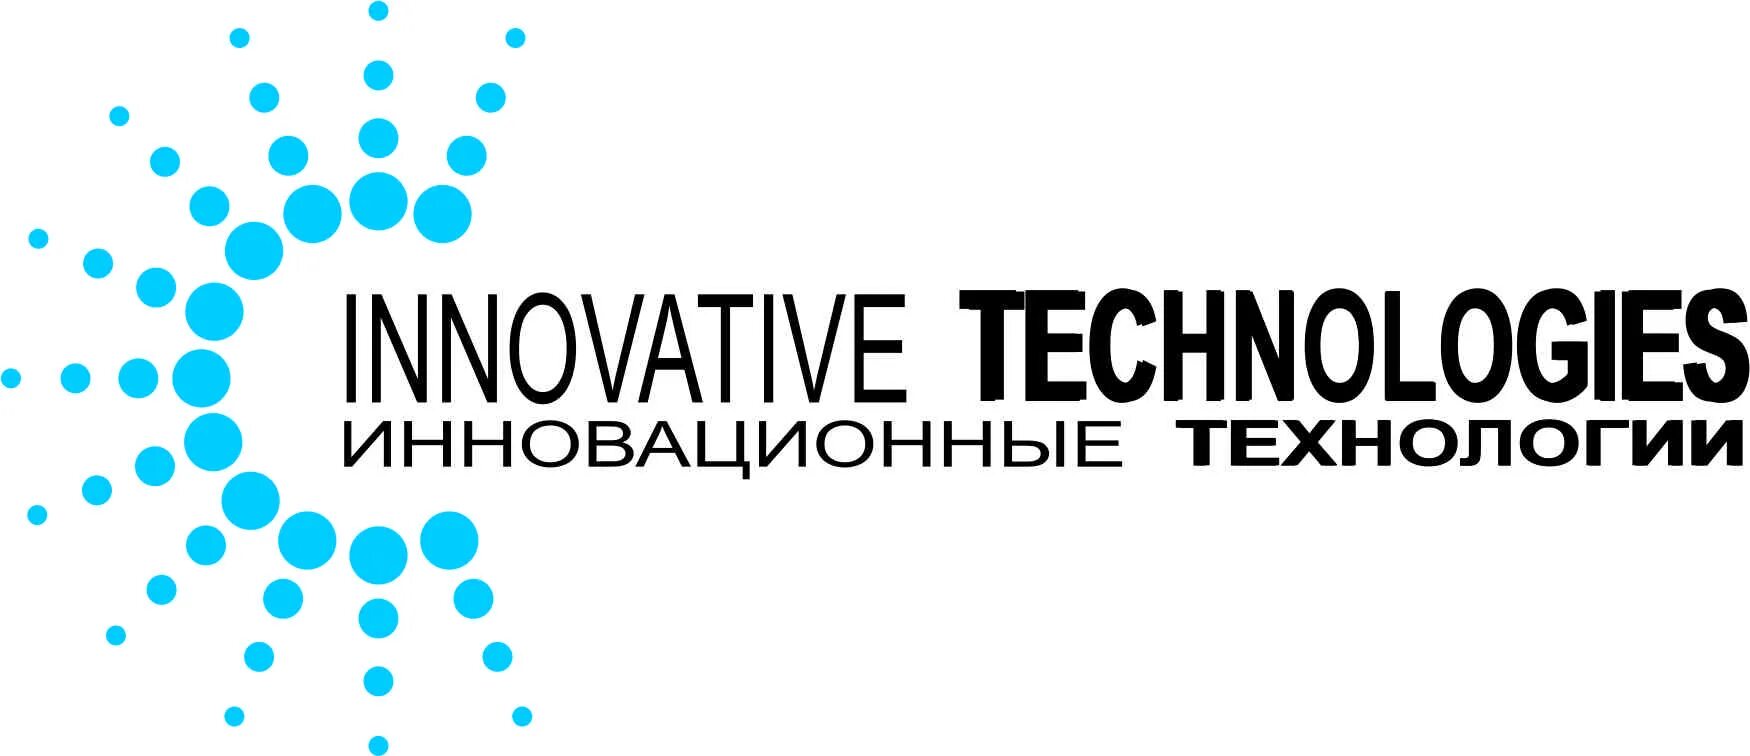 Инновационные технологии logo. Инновационные технологии эмблема. Инновации и технология лого. Новые технологии логотип. Технологии салехард